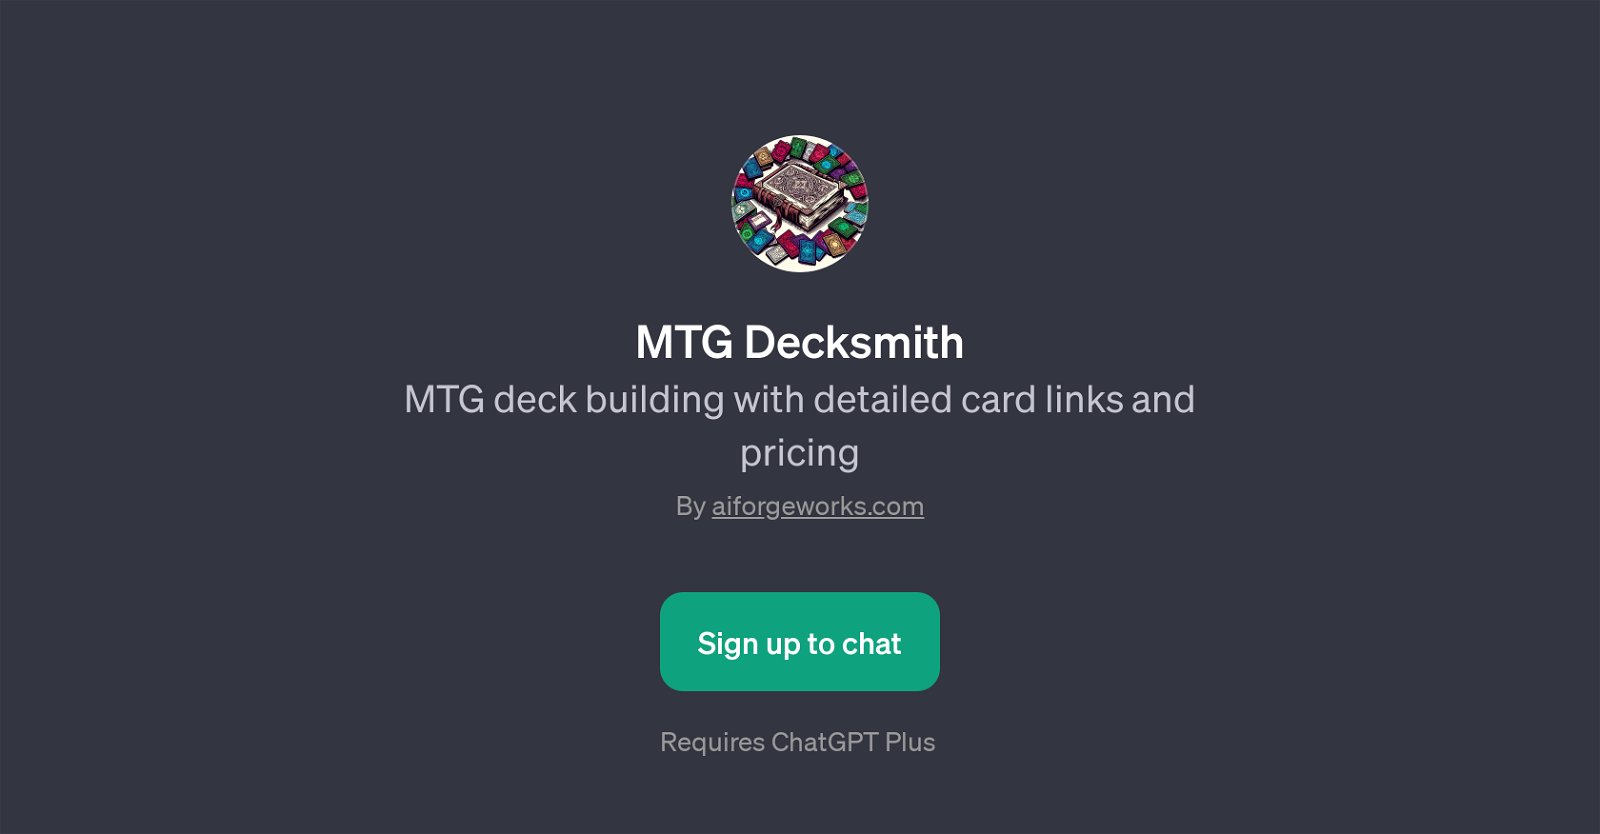 MTG Decksmith website